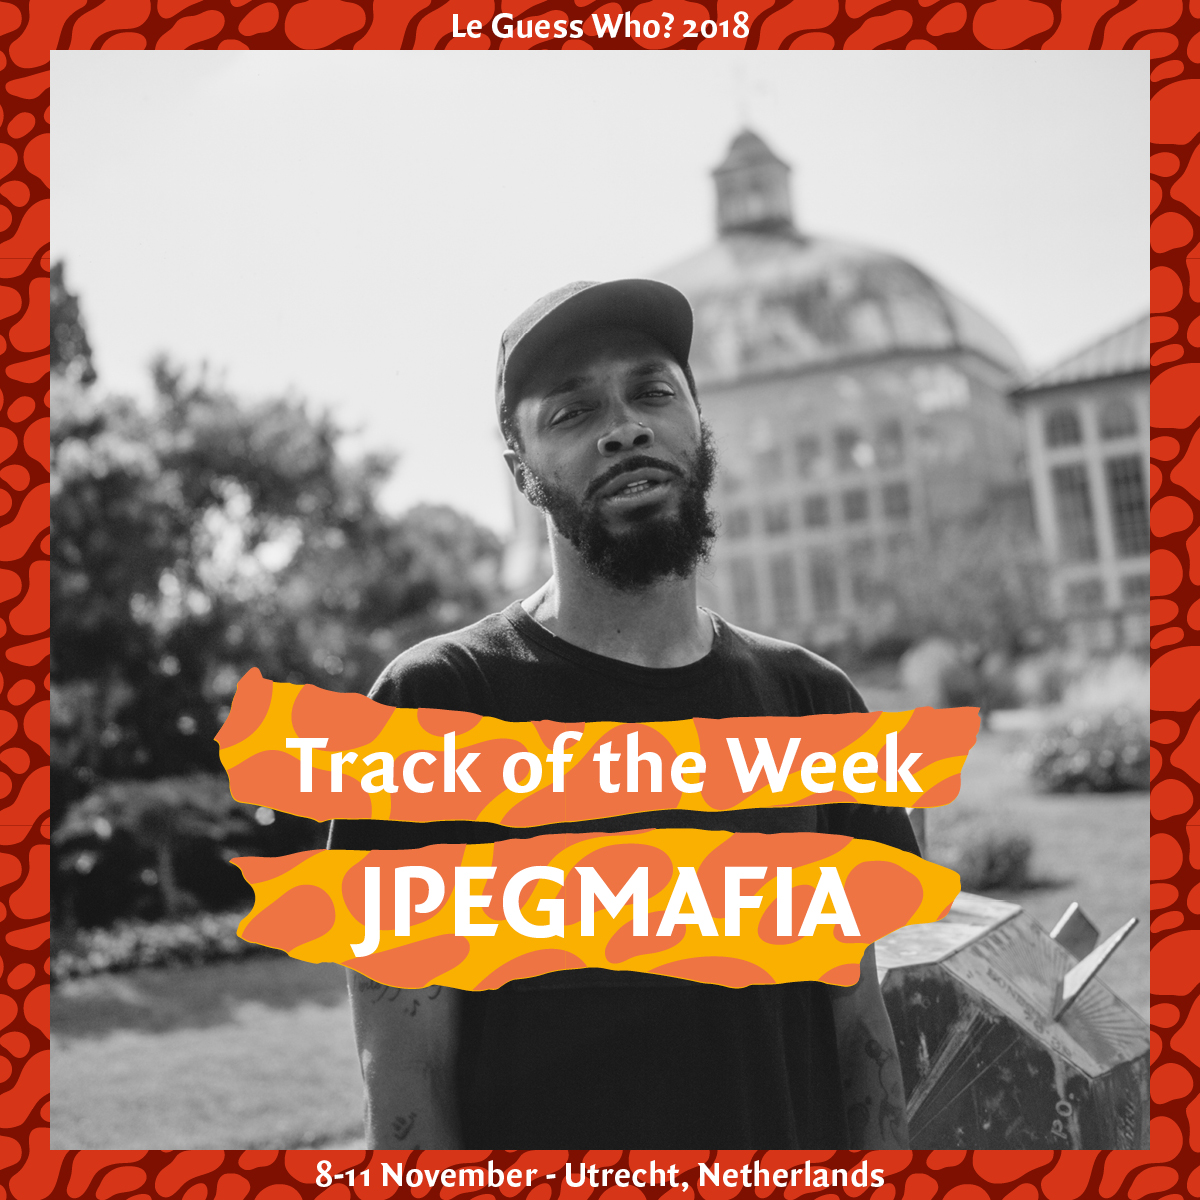  Track of the Week #16: JPEGMAFIA - '1539 N. Calvert'